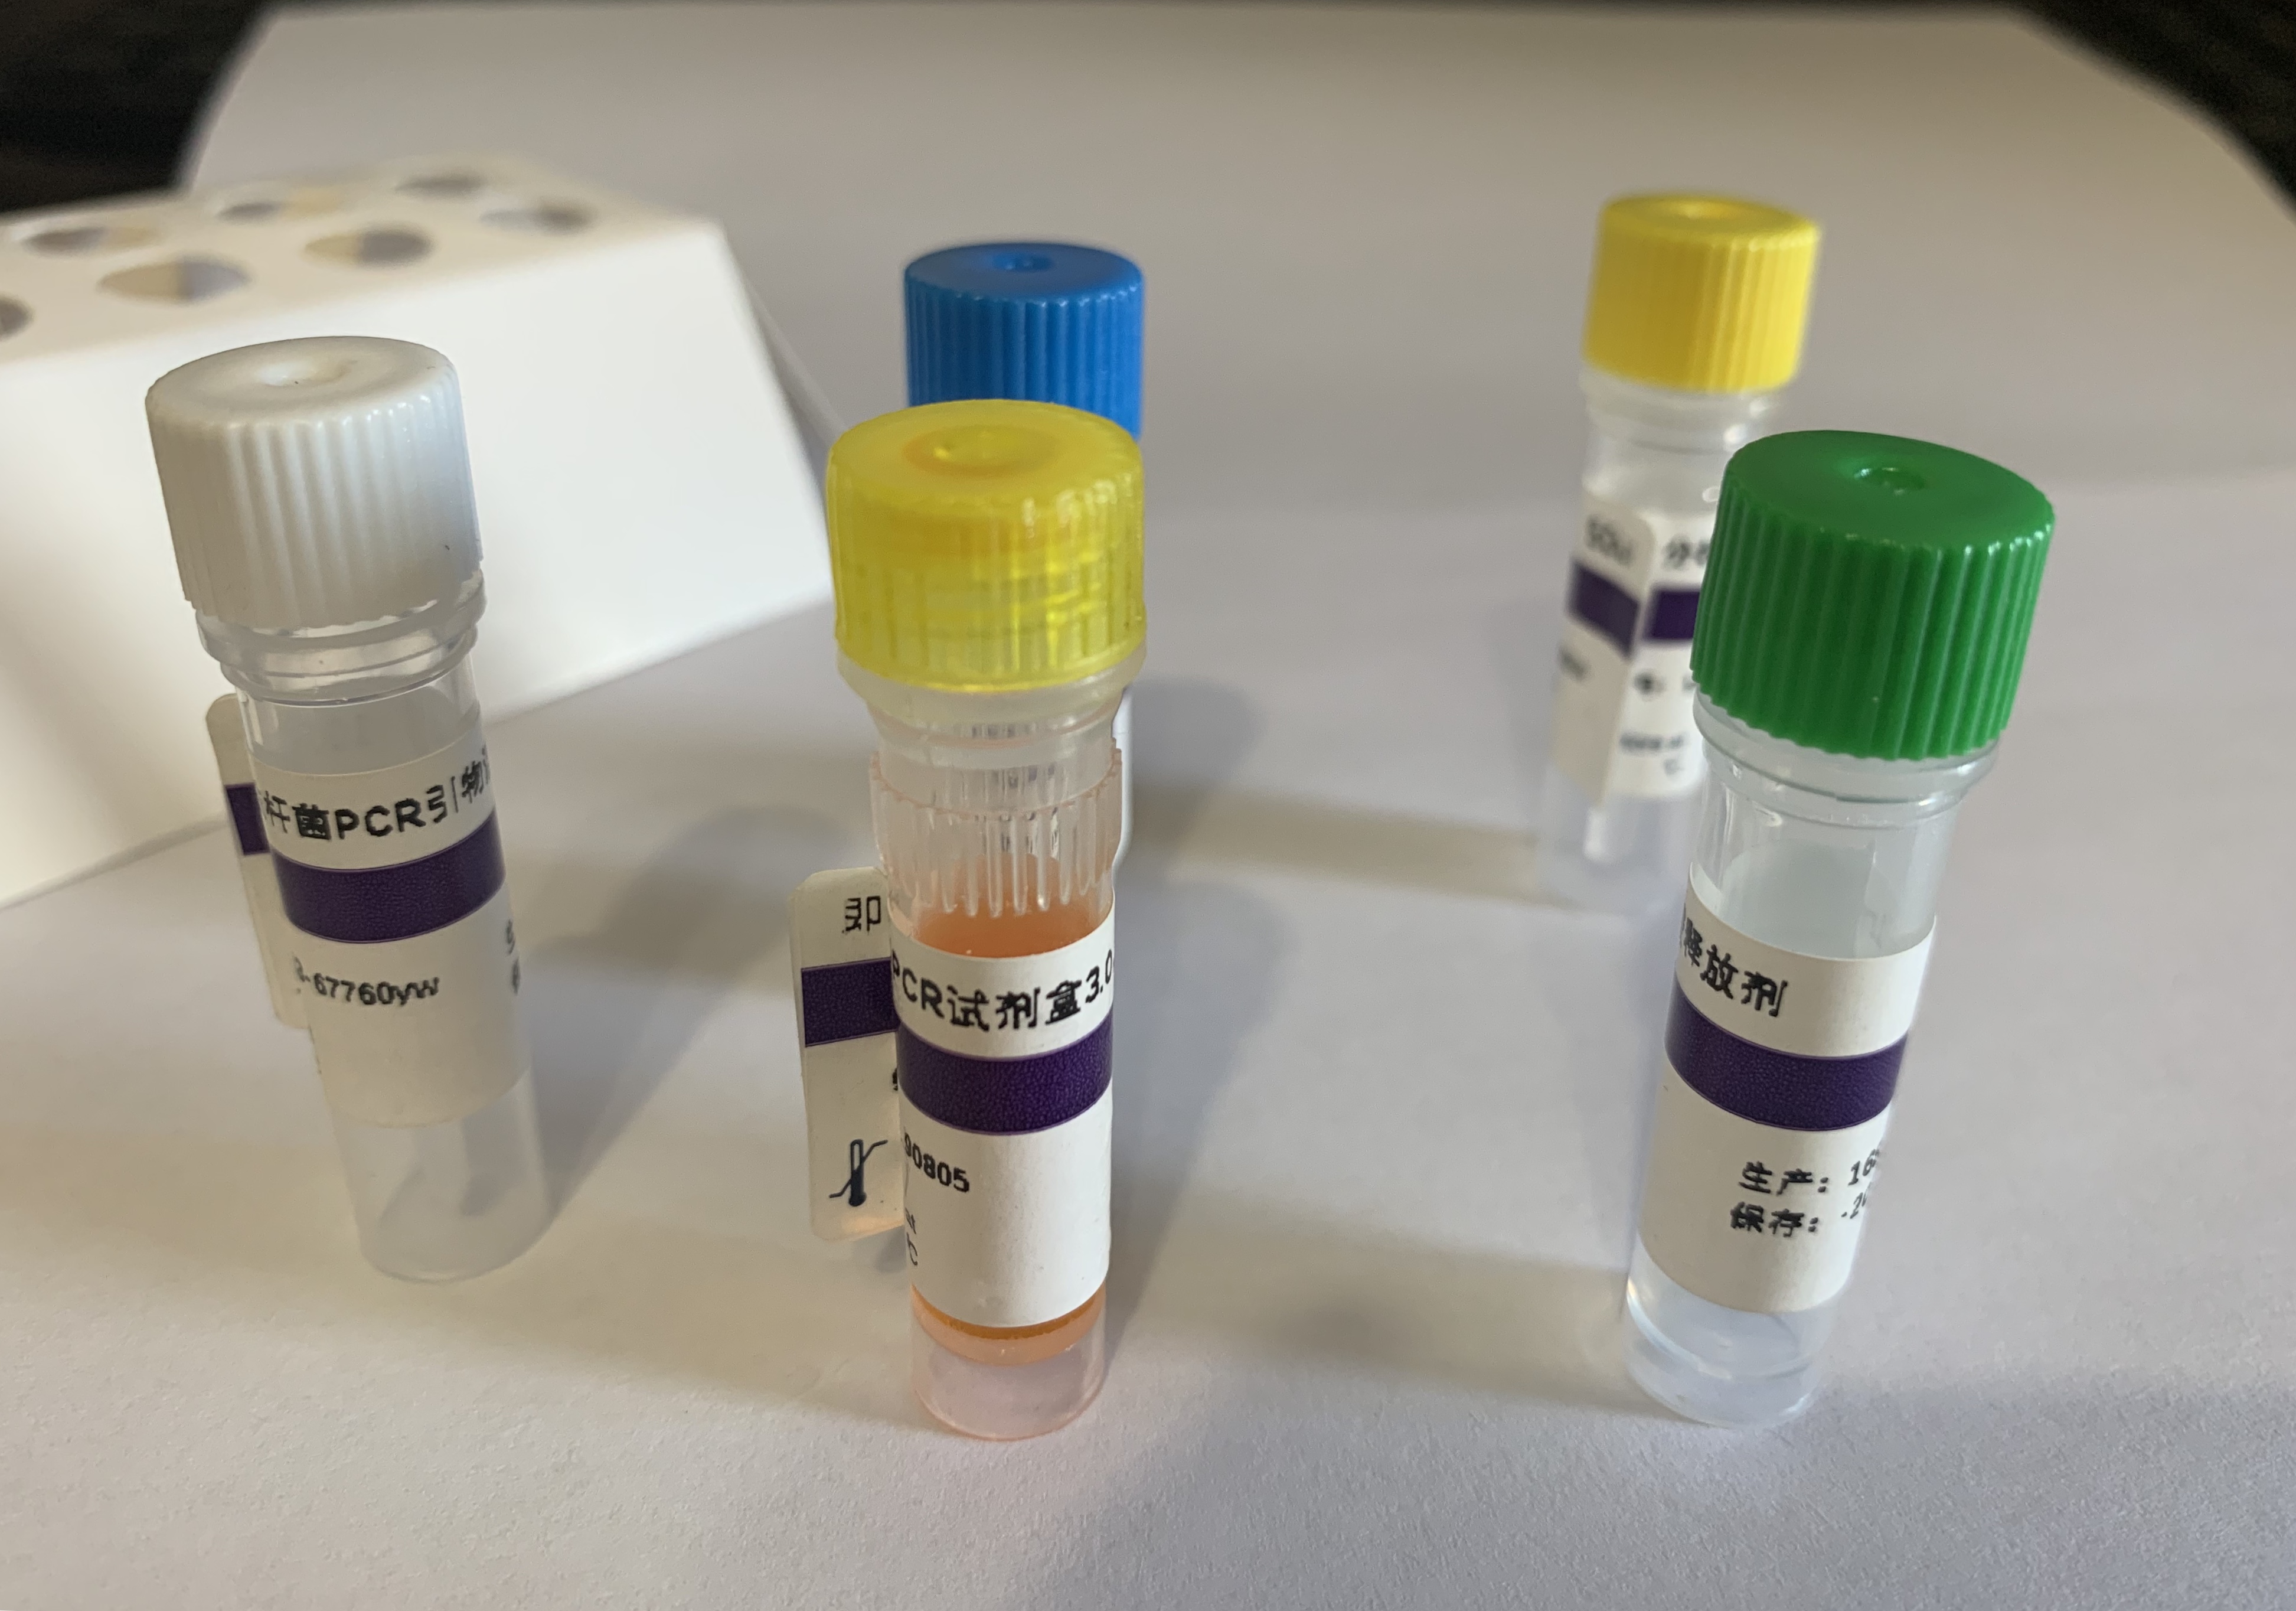 犬细小病毒(CPV)核酸检测试剂盒(PCR-荧光探针法)